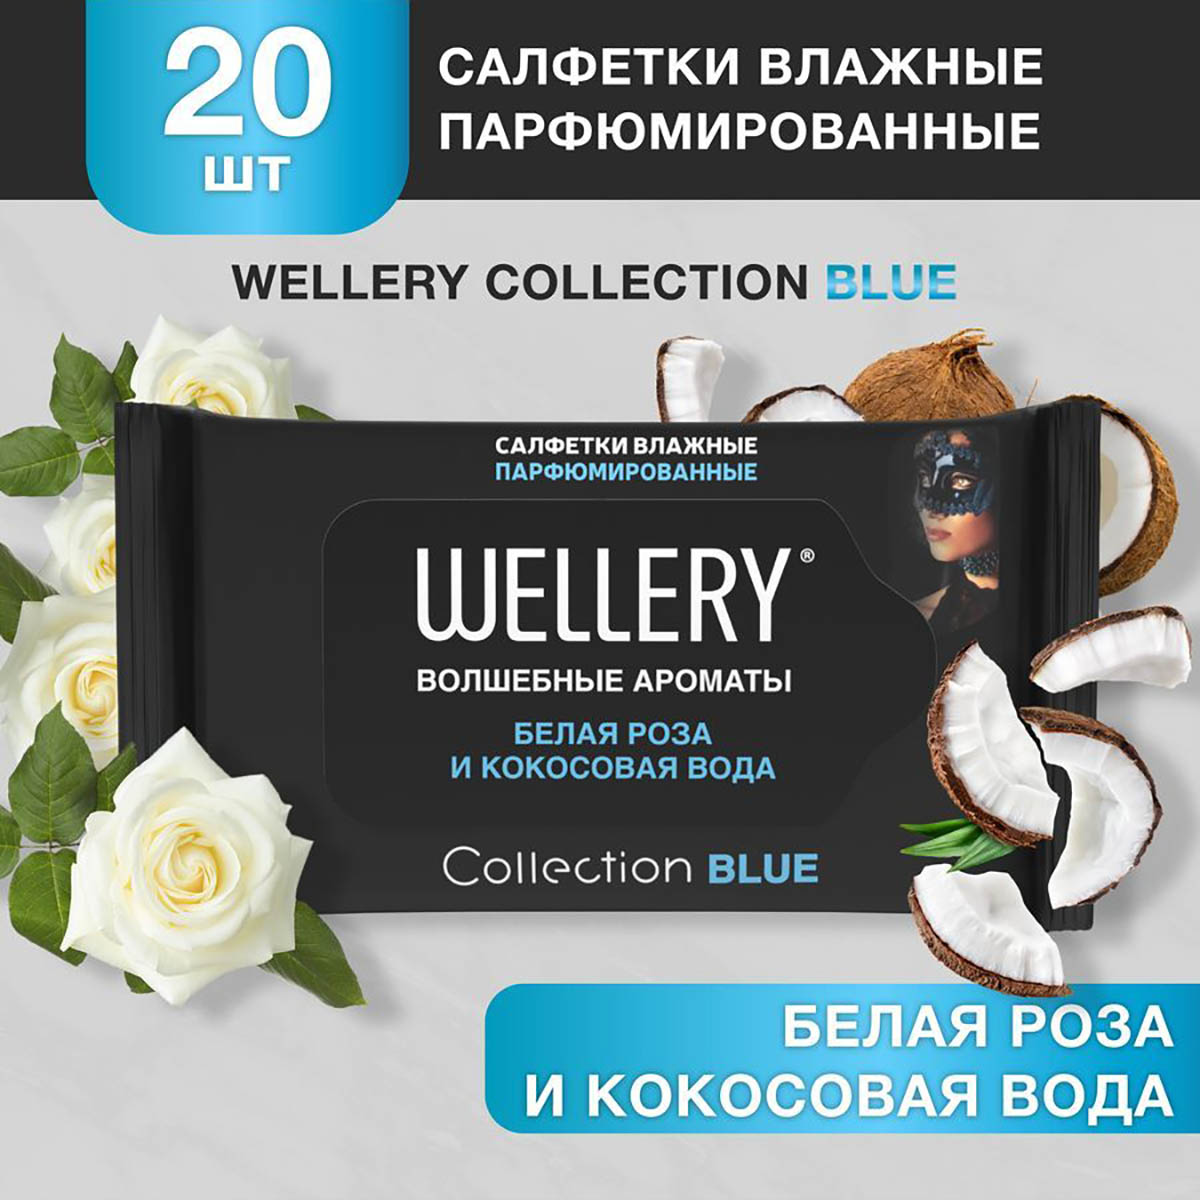 Салфетки влажные Wellery Collection Blue универсальные, белая роза, кокосовая вода 20 шт